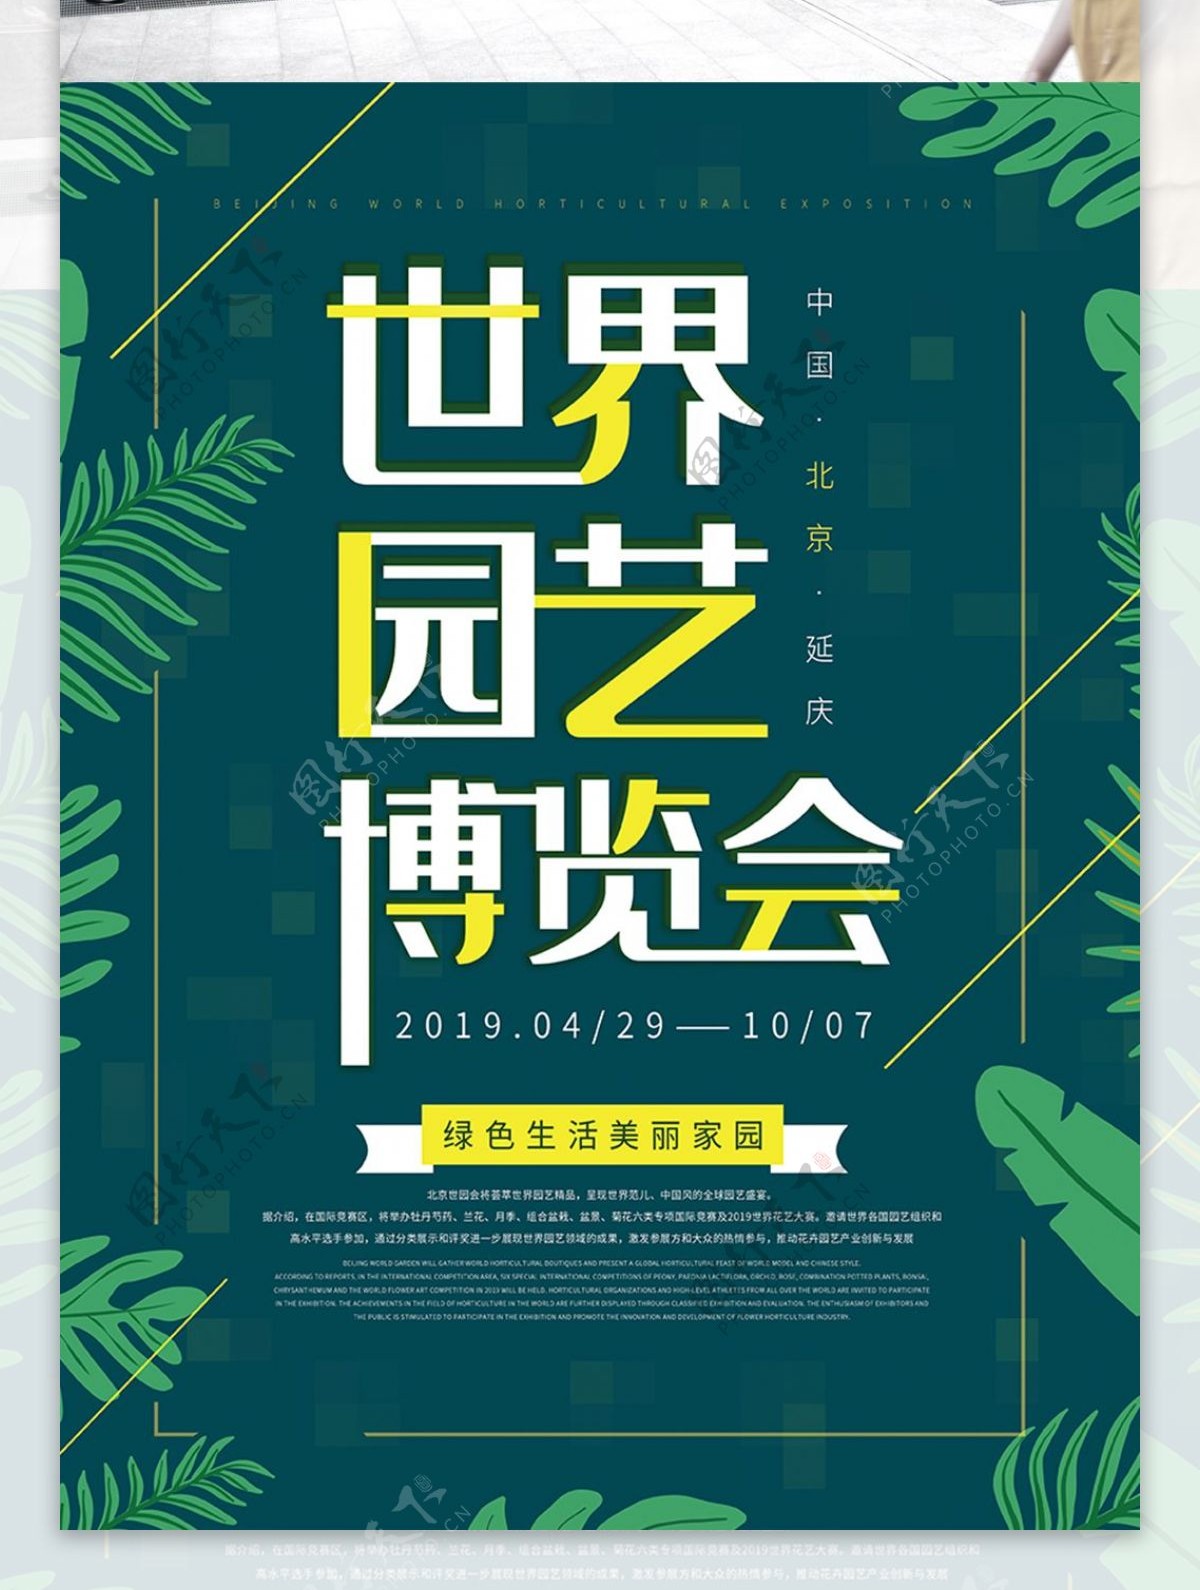 原创北京世界园艺博览会海报